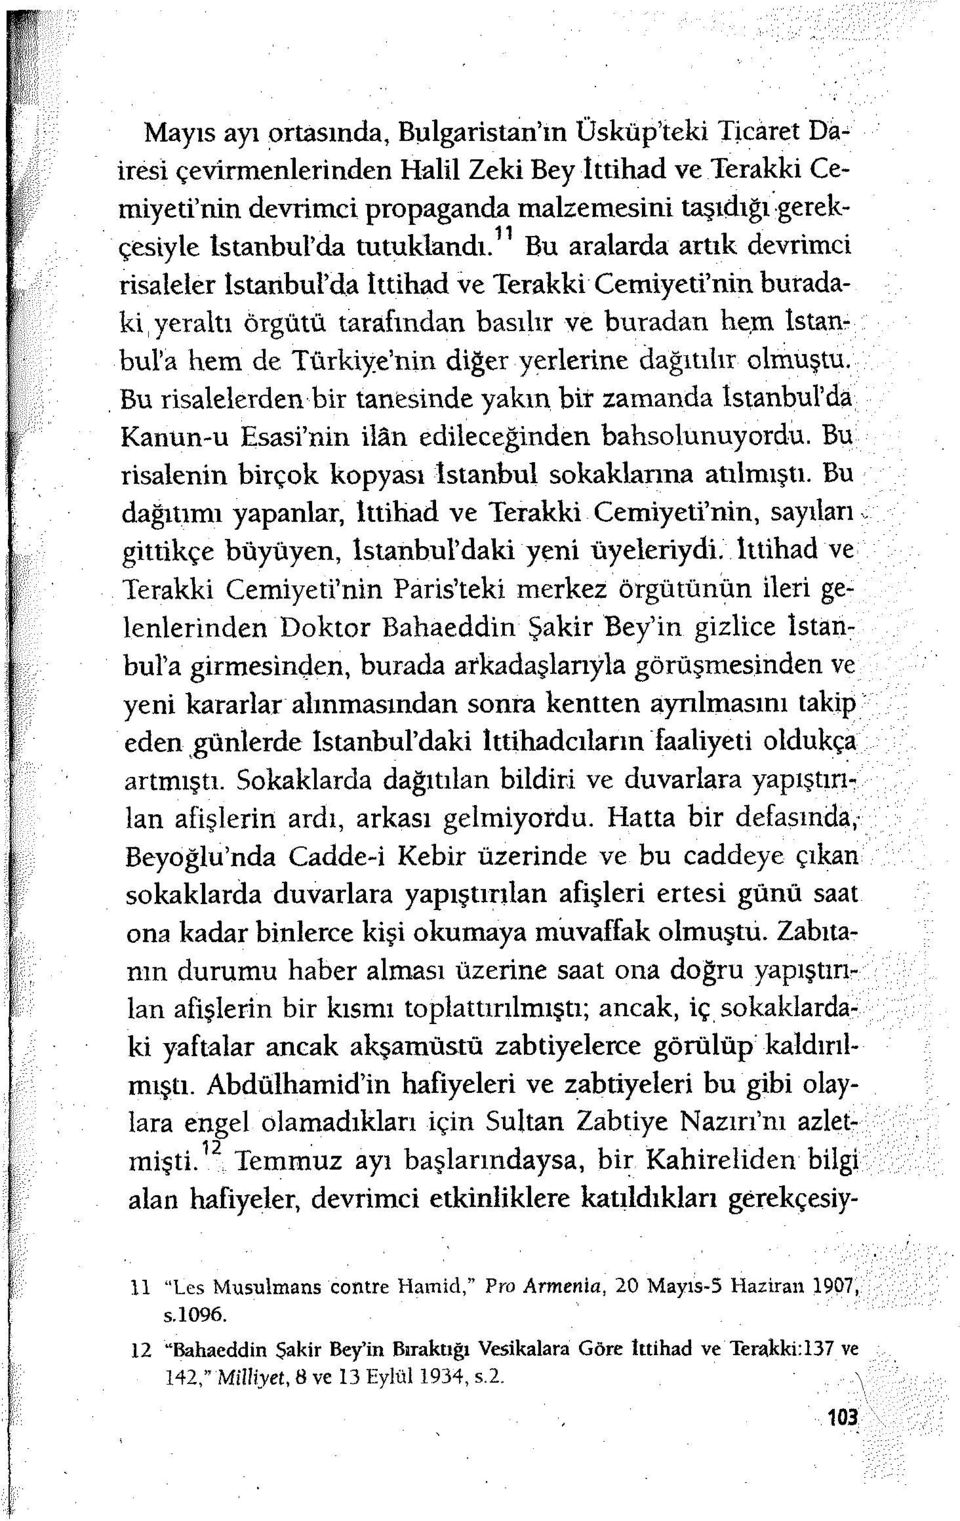 11 Bu aralarda artık devrimci risaleler İstanbul'da Ittihad ve Terakki Cemiyeti'nin buradaki yeraltı örgütü tarafından basılır ve buradan hem İstanbul'a hem de Türkiye'nin diğer yerlerine dağıtılır